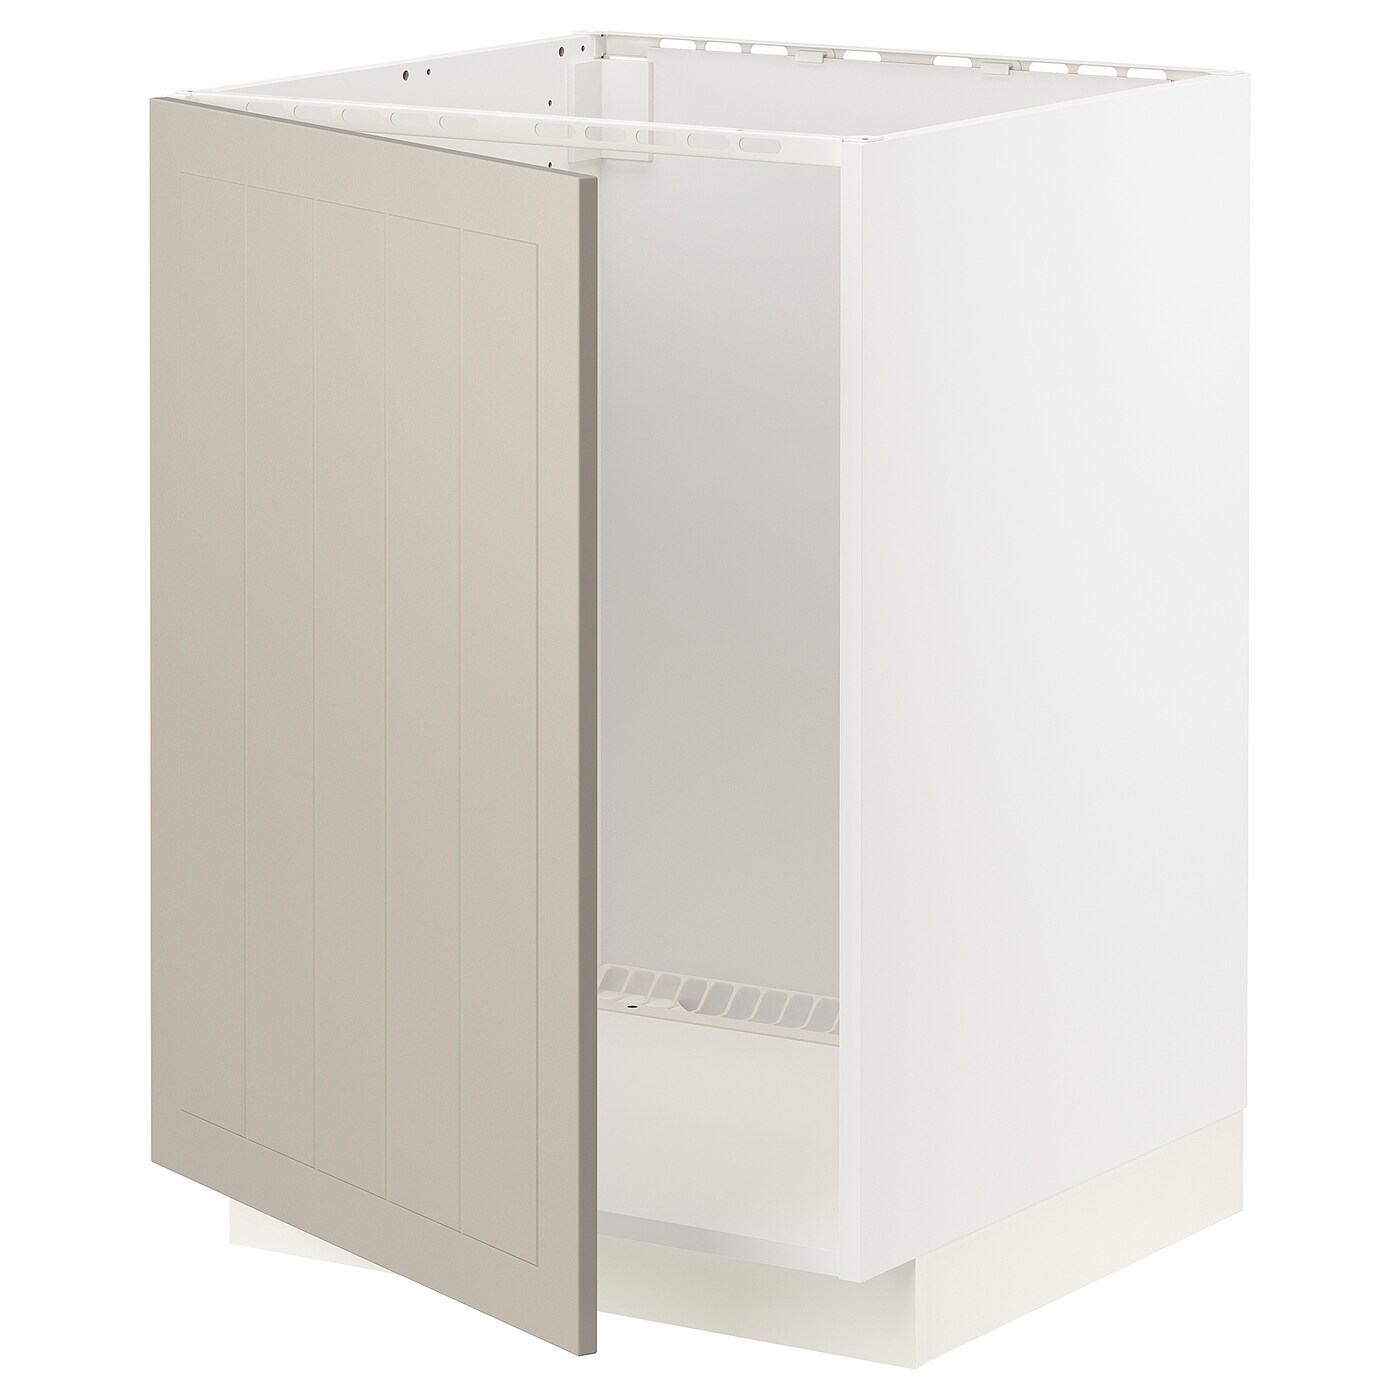 Шкаф под раковину - METOD IKEA/ МЕТОД ИКЕА, 88х60 см, белый/бежевый